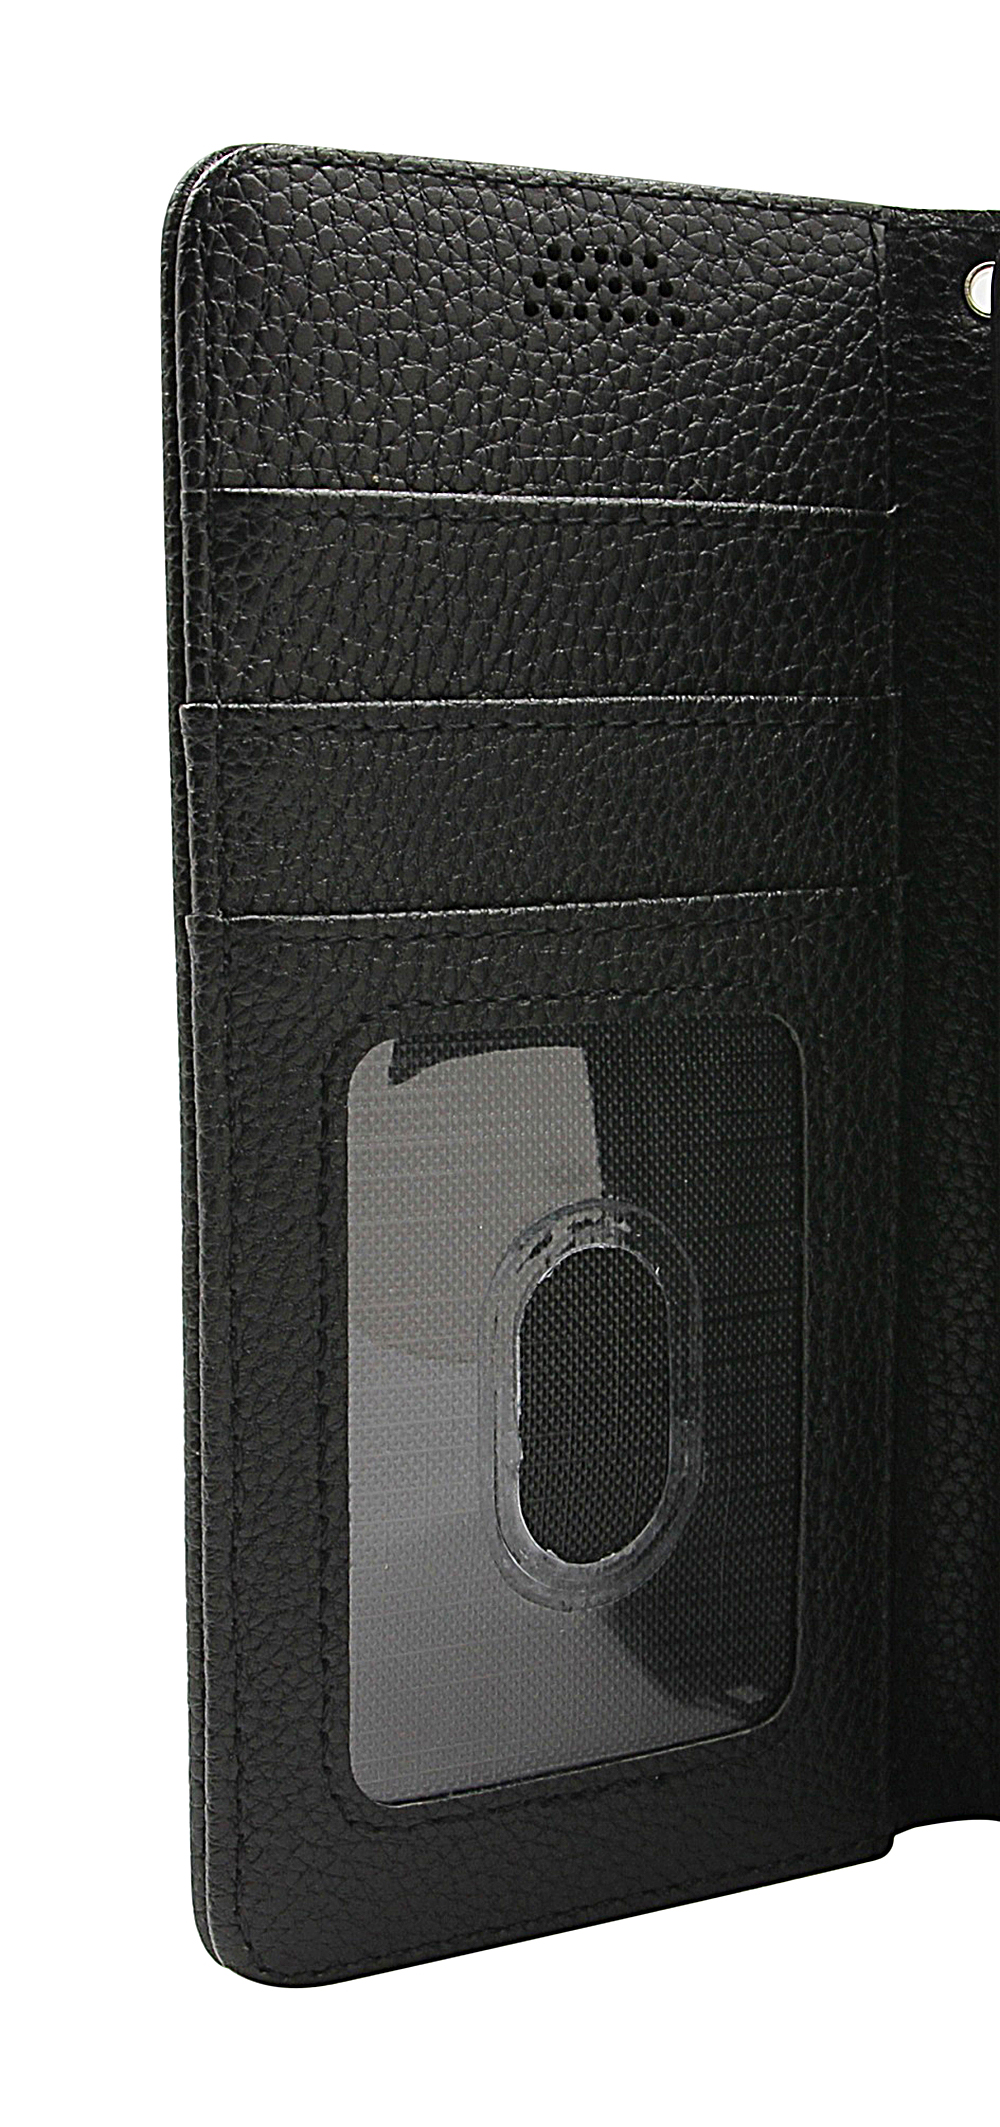 New Standcase Wallet Motorola Moto G71